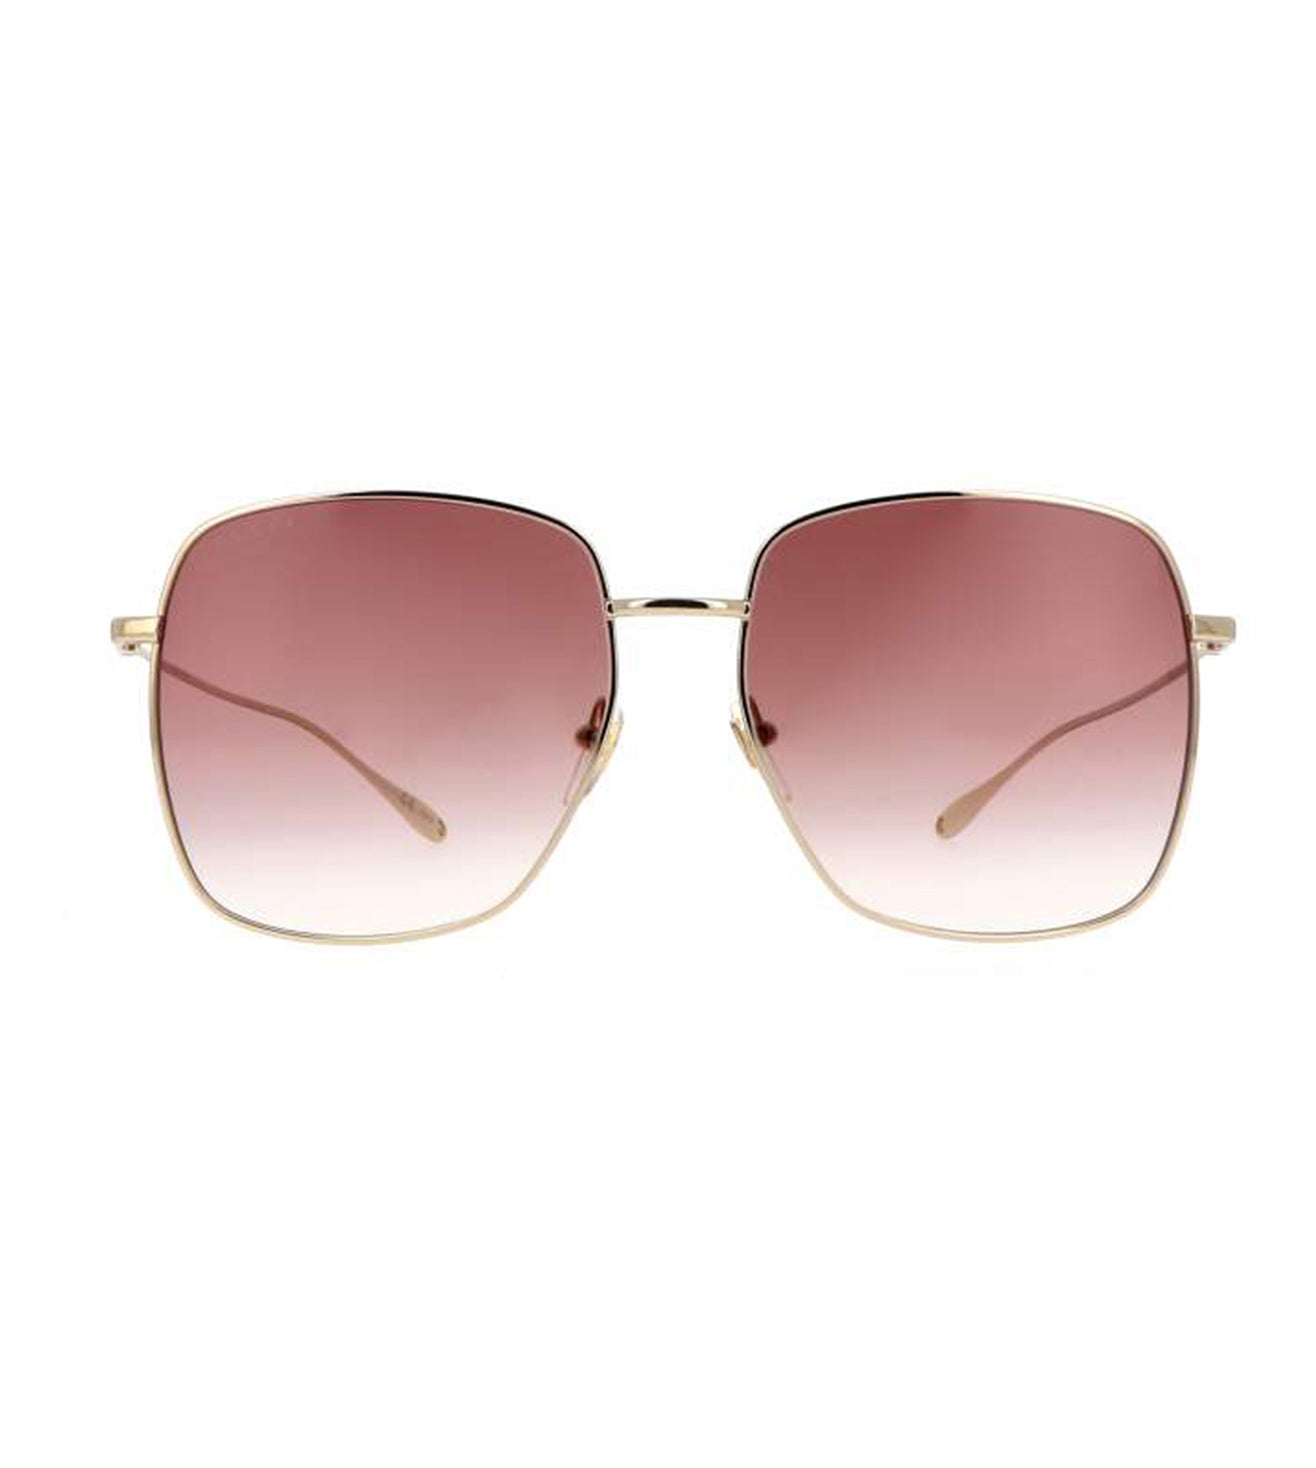 Gucci Women's Red Square Sunglasses